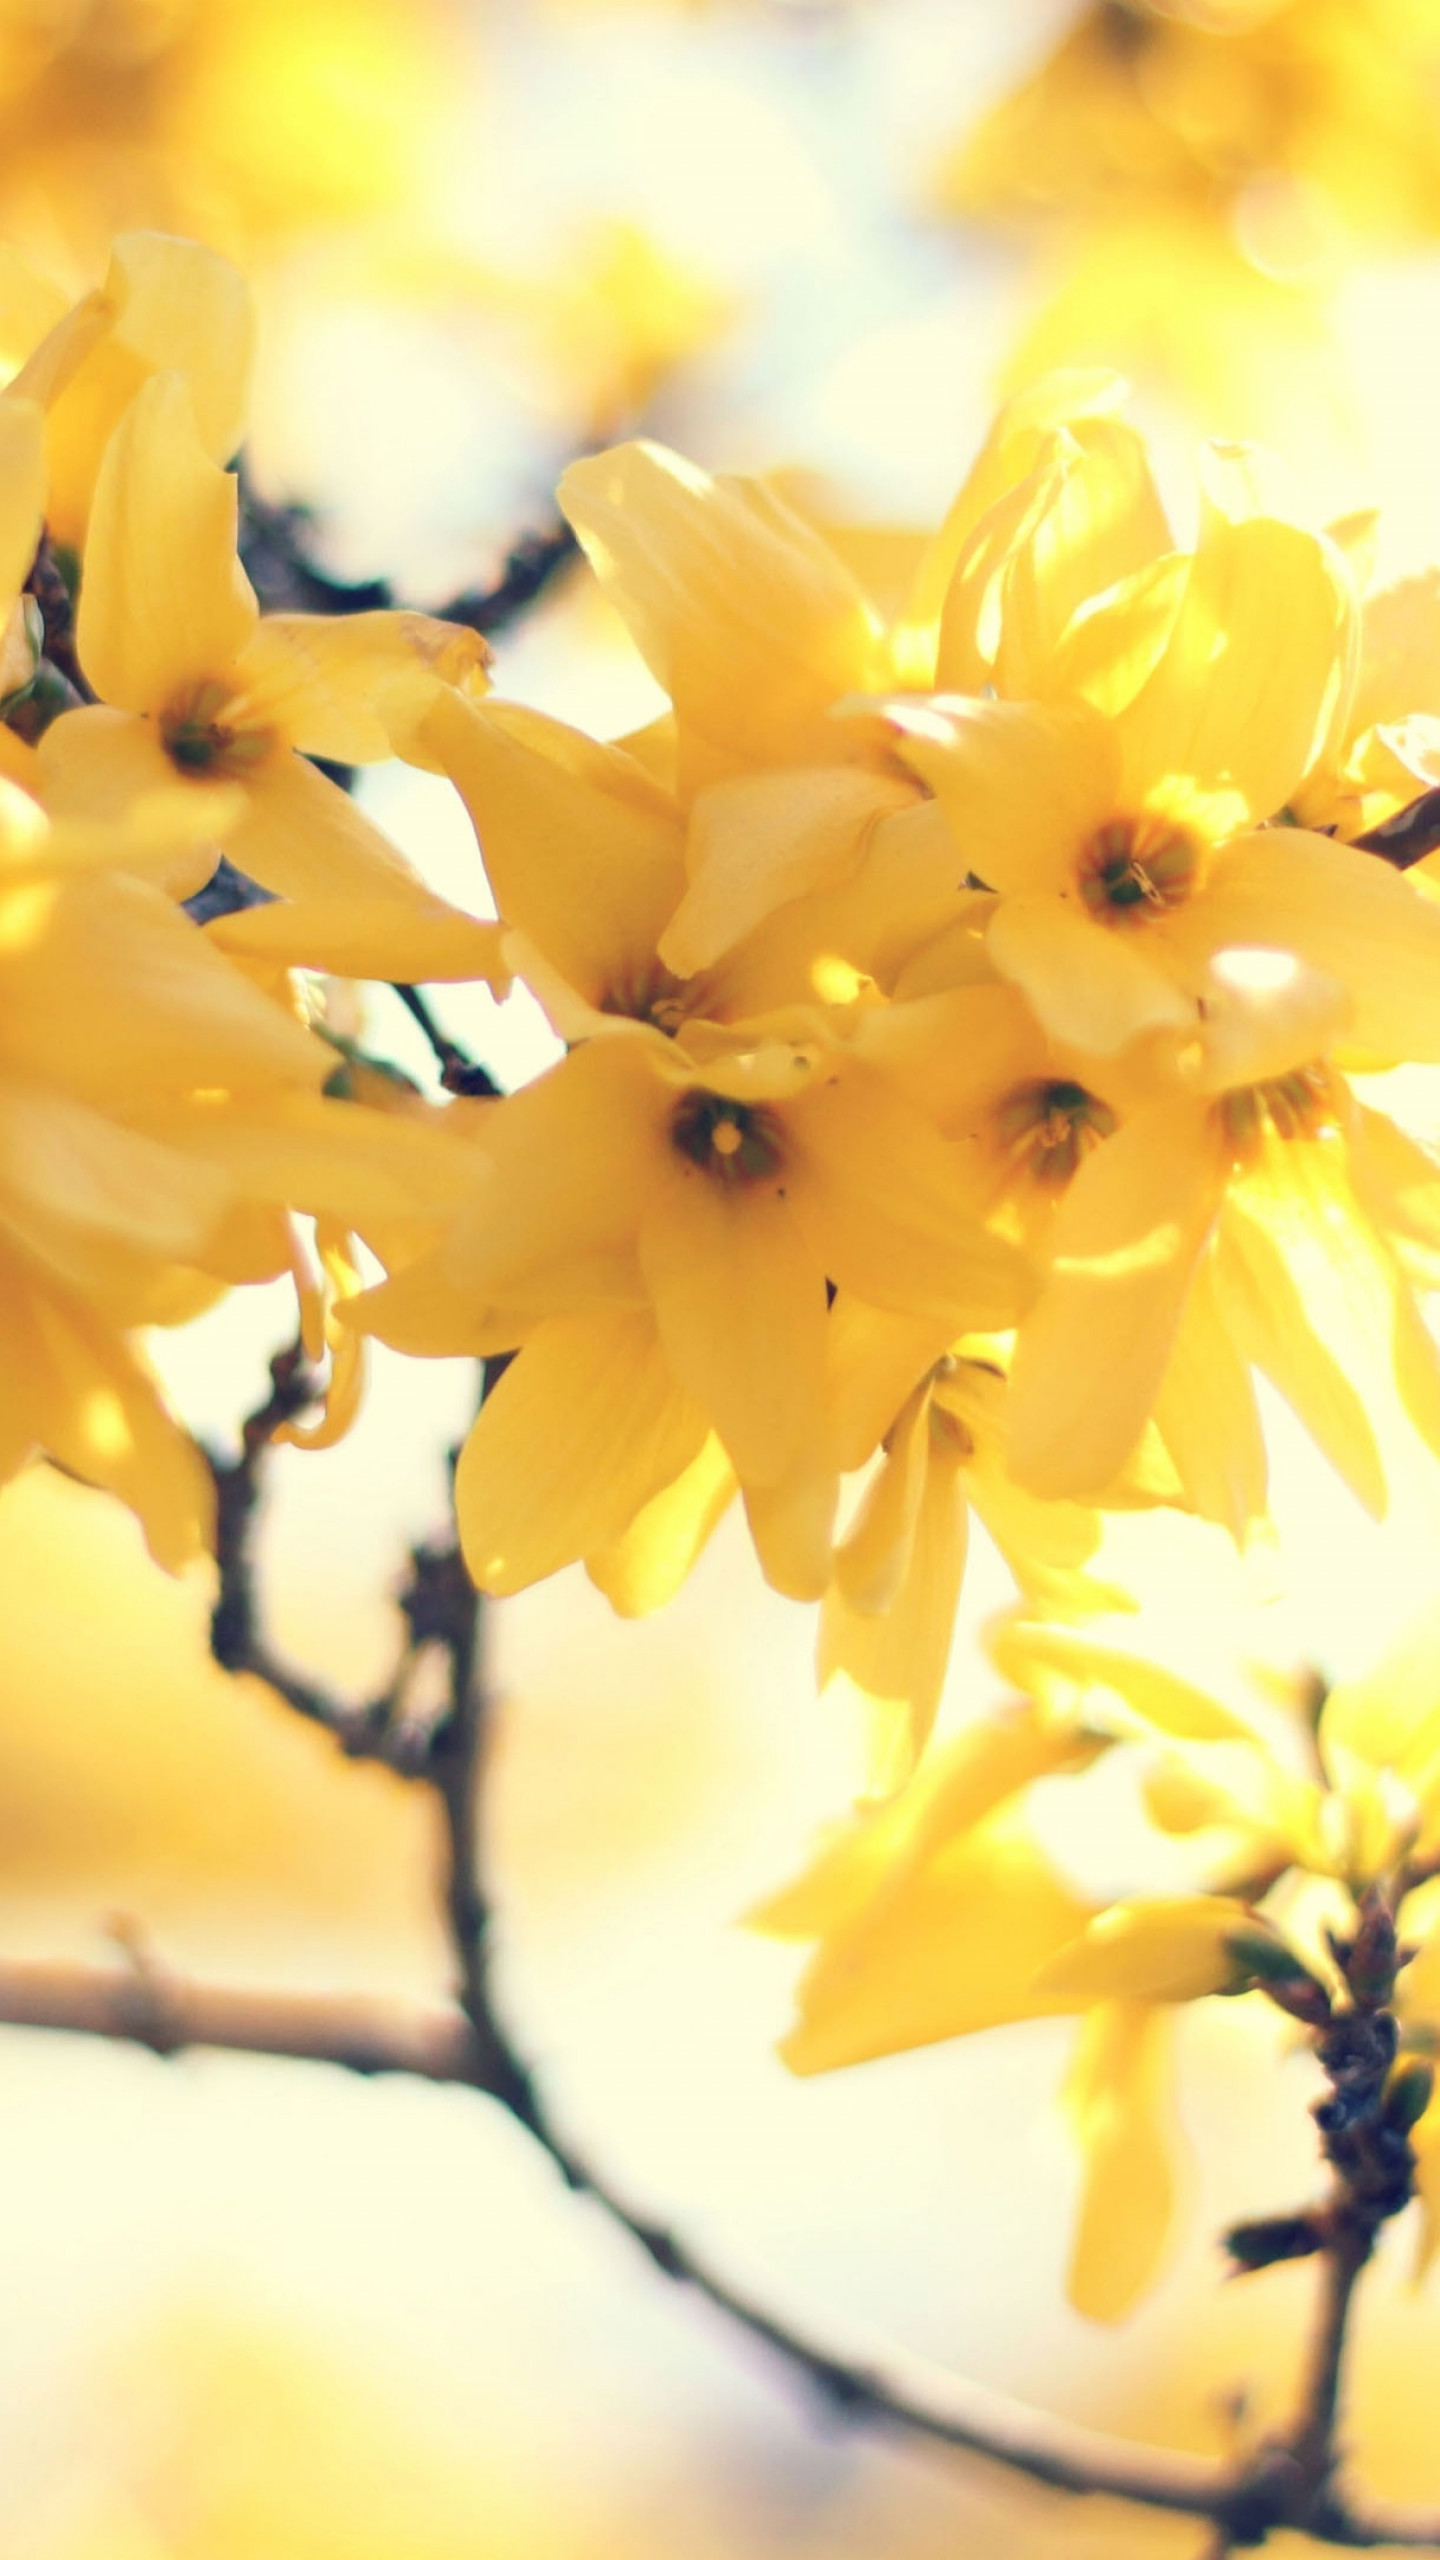 Flowers 5k. Желтые обои с цветочками фото. Пооевы5 цветы. Амазинг елоу